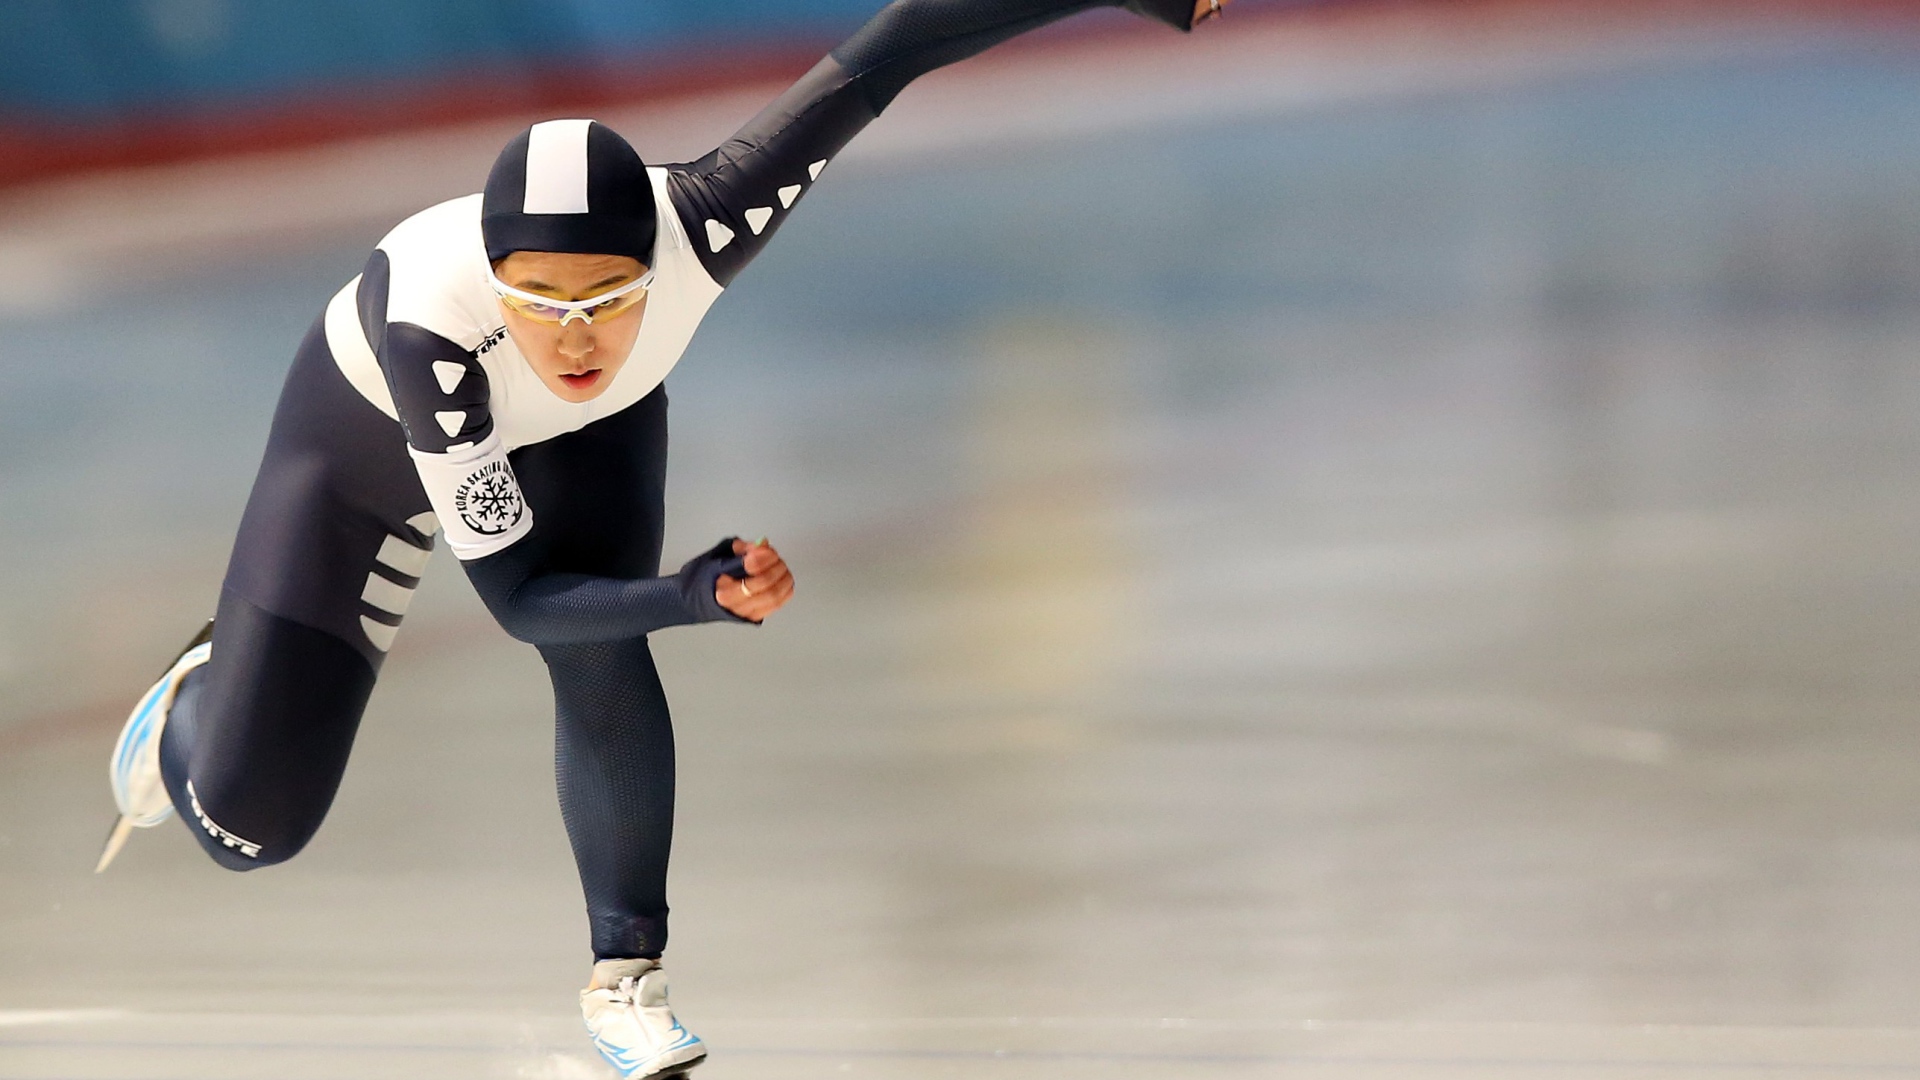 Обладательница золотой медали в дисциплине скоростной бег на коньках Санг-Хва Ли из Южной Кореи